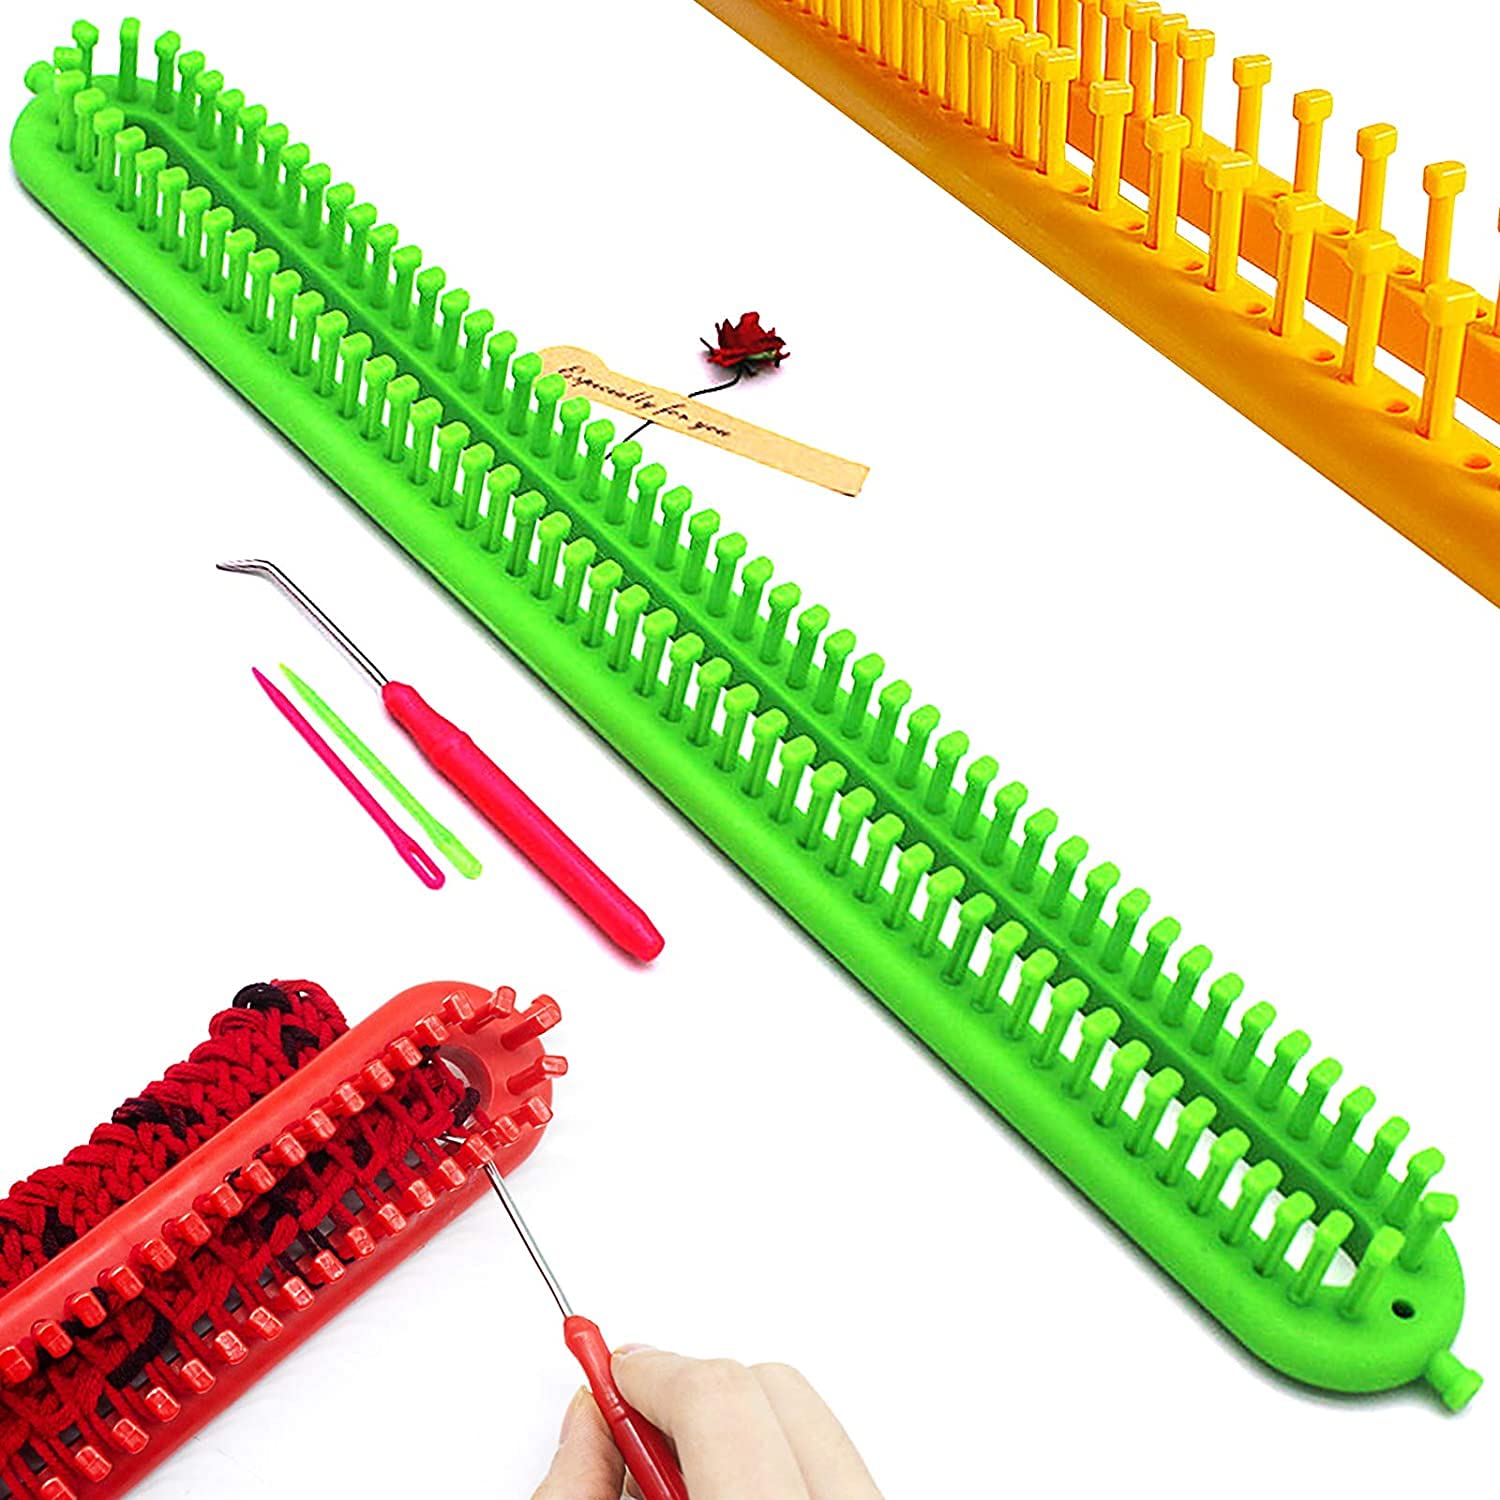 Katech 85-Piece Crochet Hooks Set Crochet Hook Kit with Storage